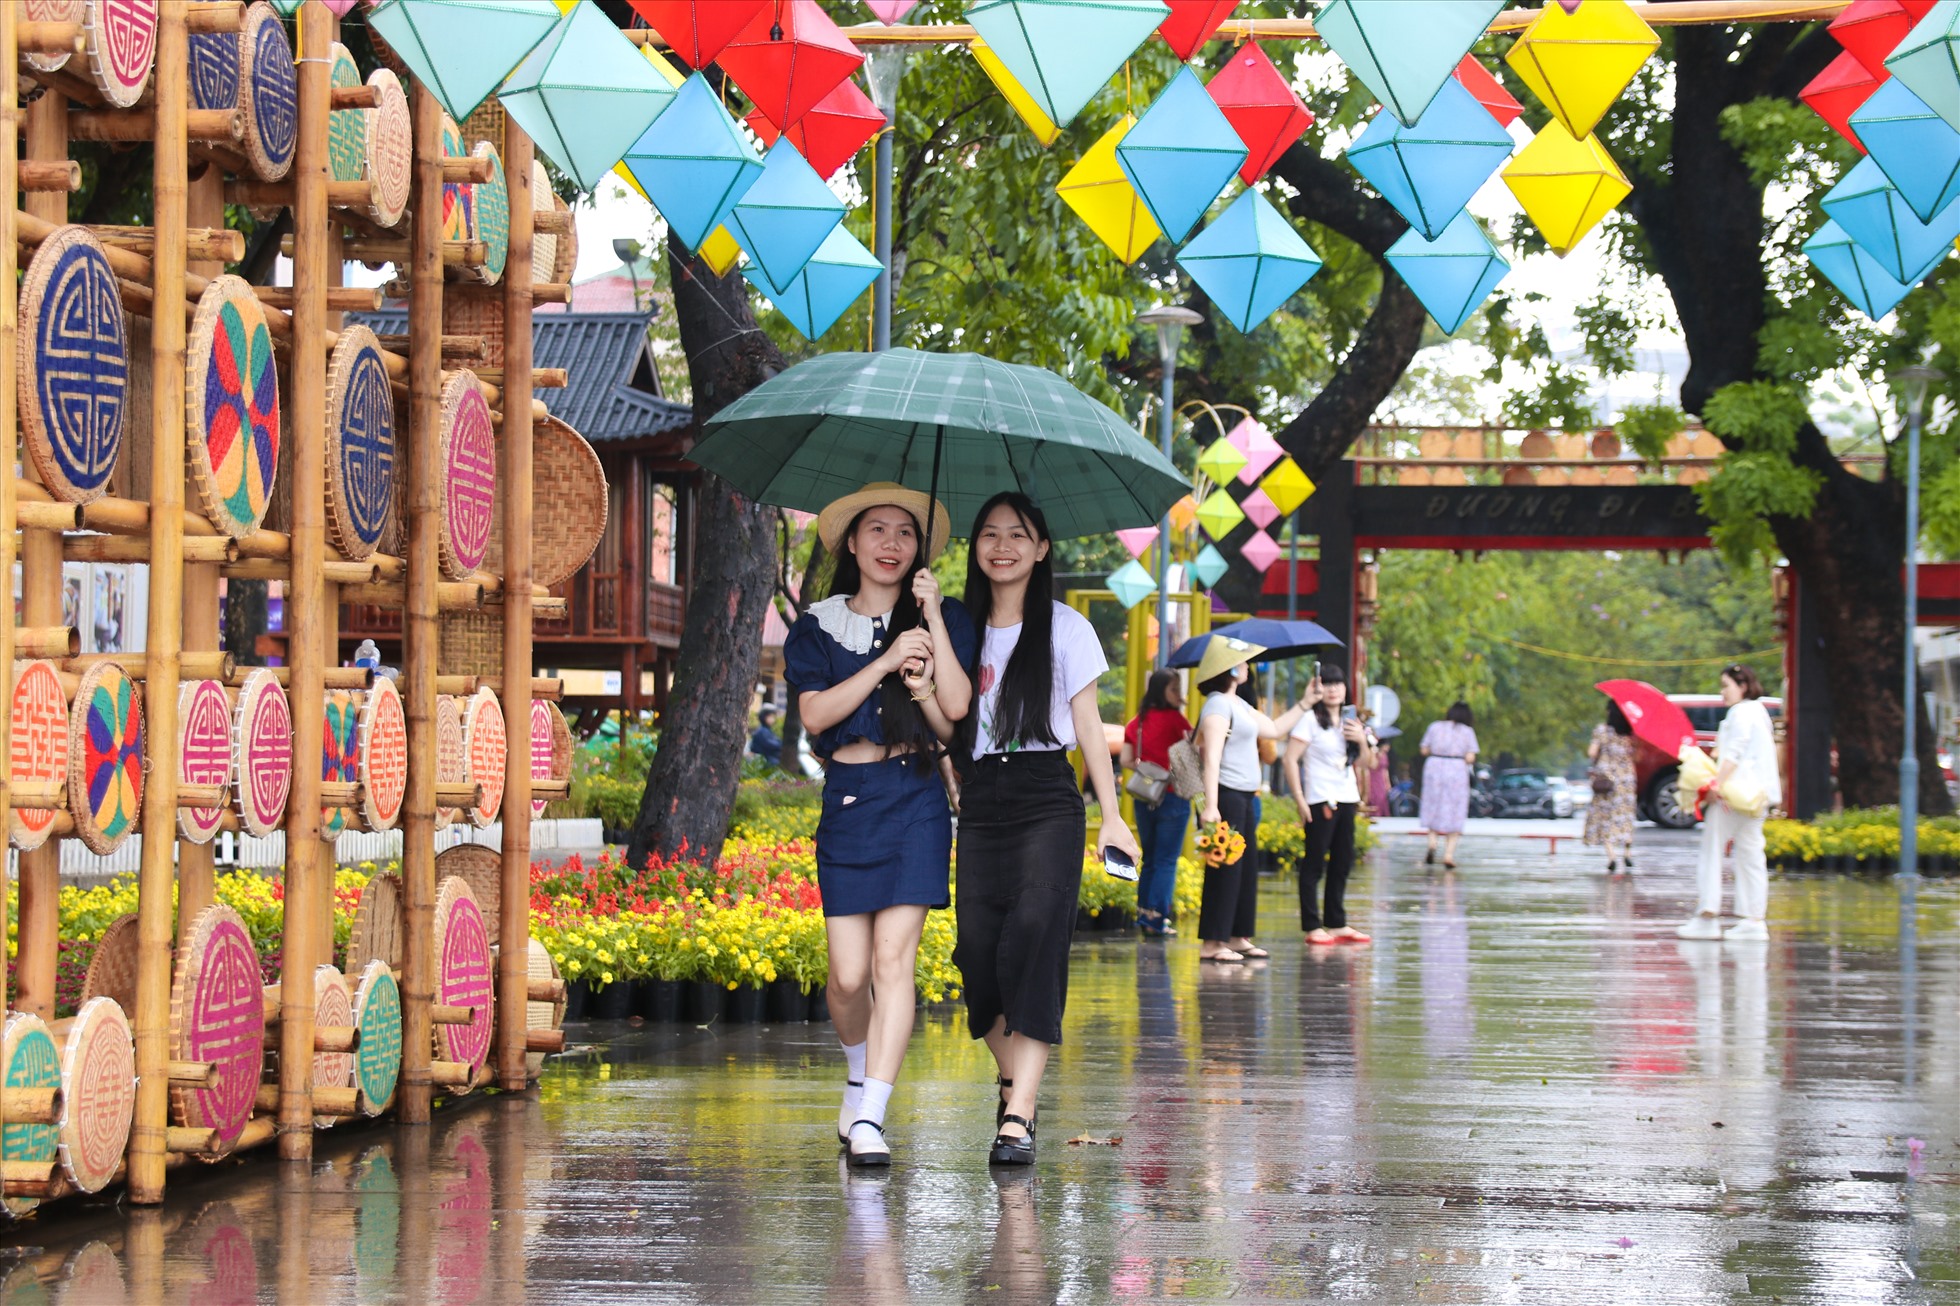 Festival NTT Huế  với chủ đề “Tinh hoa nghề Việt” đang diễn ra được gần một nửa chặng đường, các gian hàng nghề truyền thống và các không gian thơ mộng được chuẩn bị trưng bày từ những ngày trước khai mạc đến nay, thu hút rất nhiều người đến trải nghiệm.